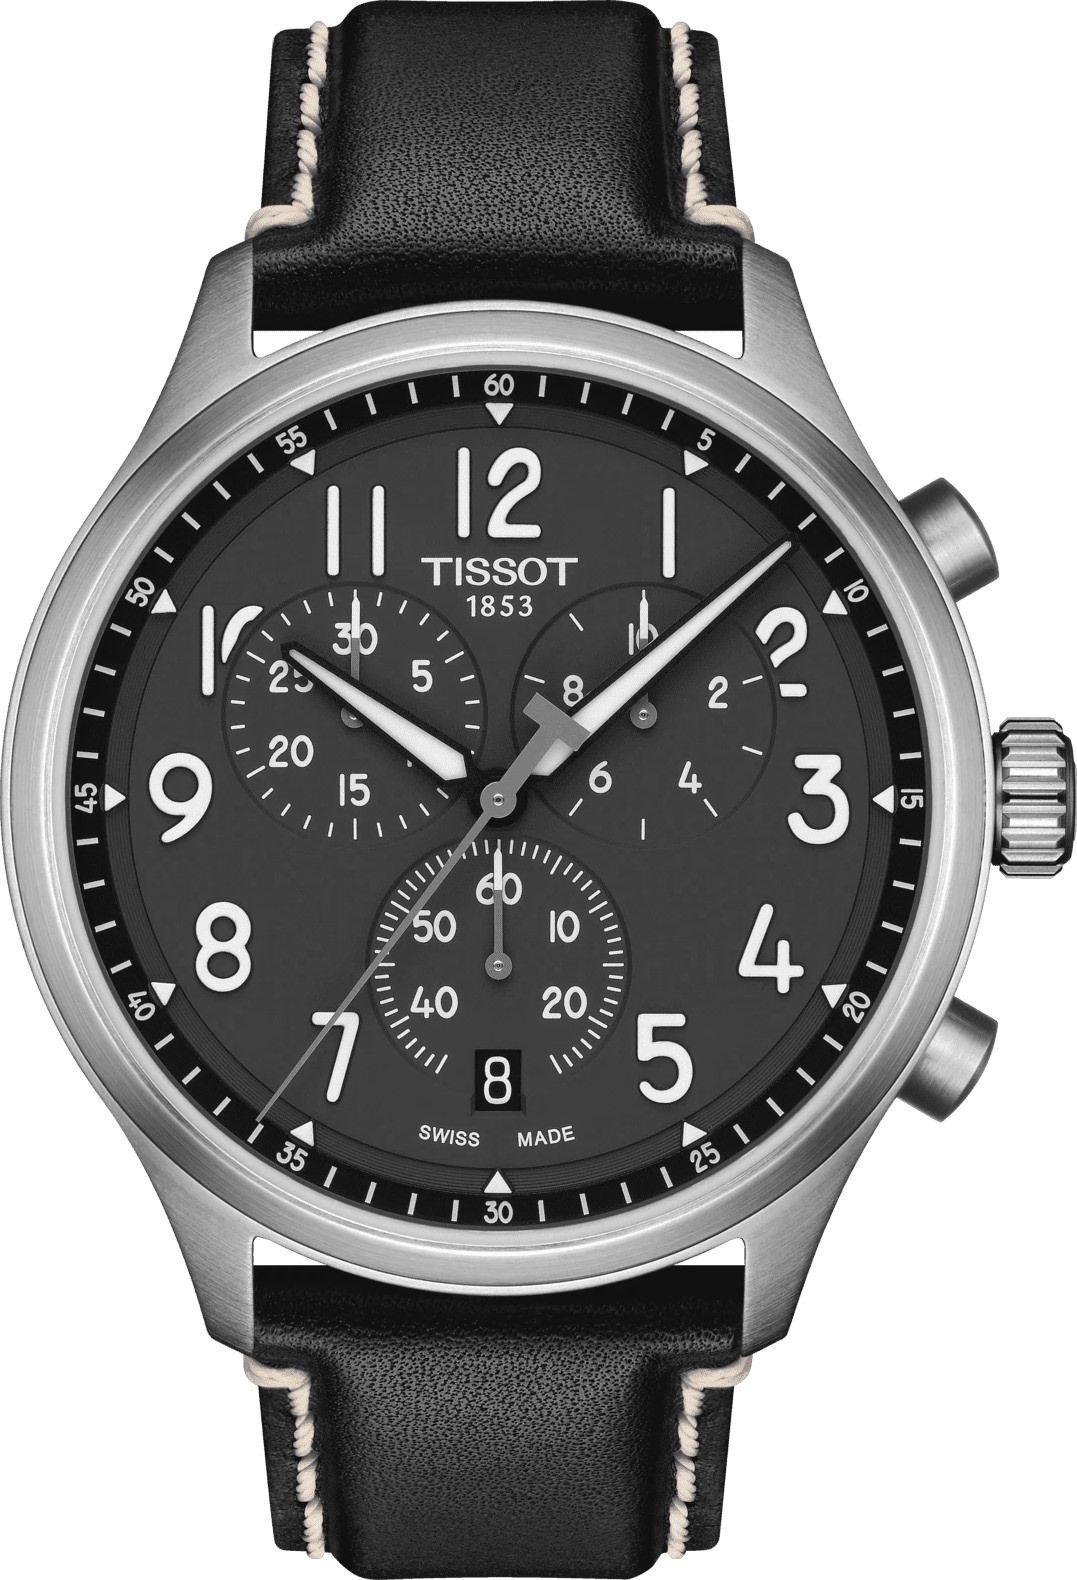 Tissot T-Sport Tissot Chrono XL Anthracite Dial 45 mm Quartz Watch For Men - 1